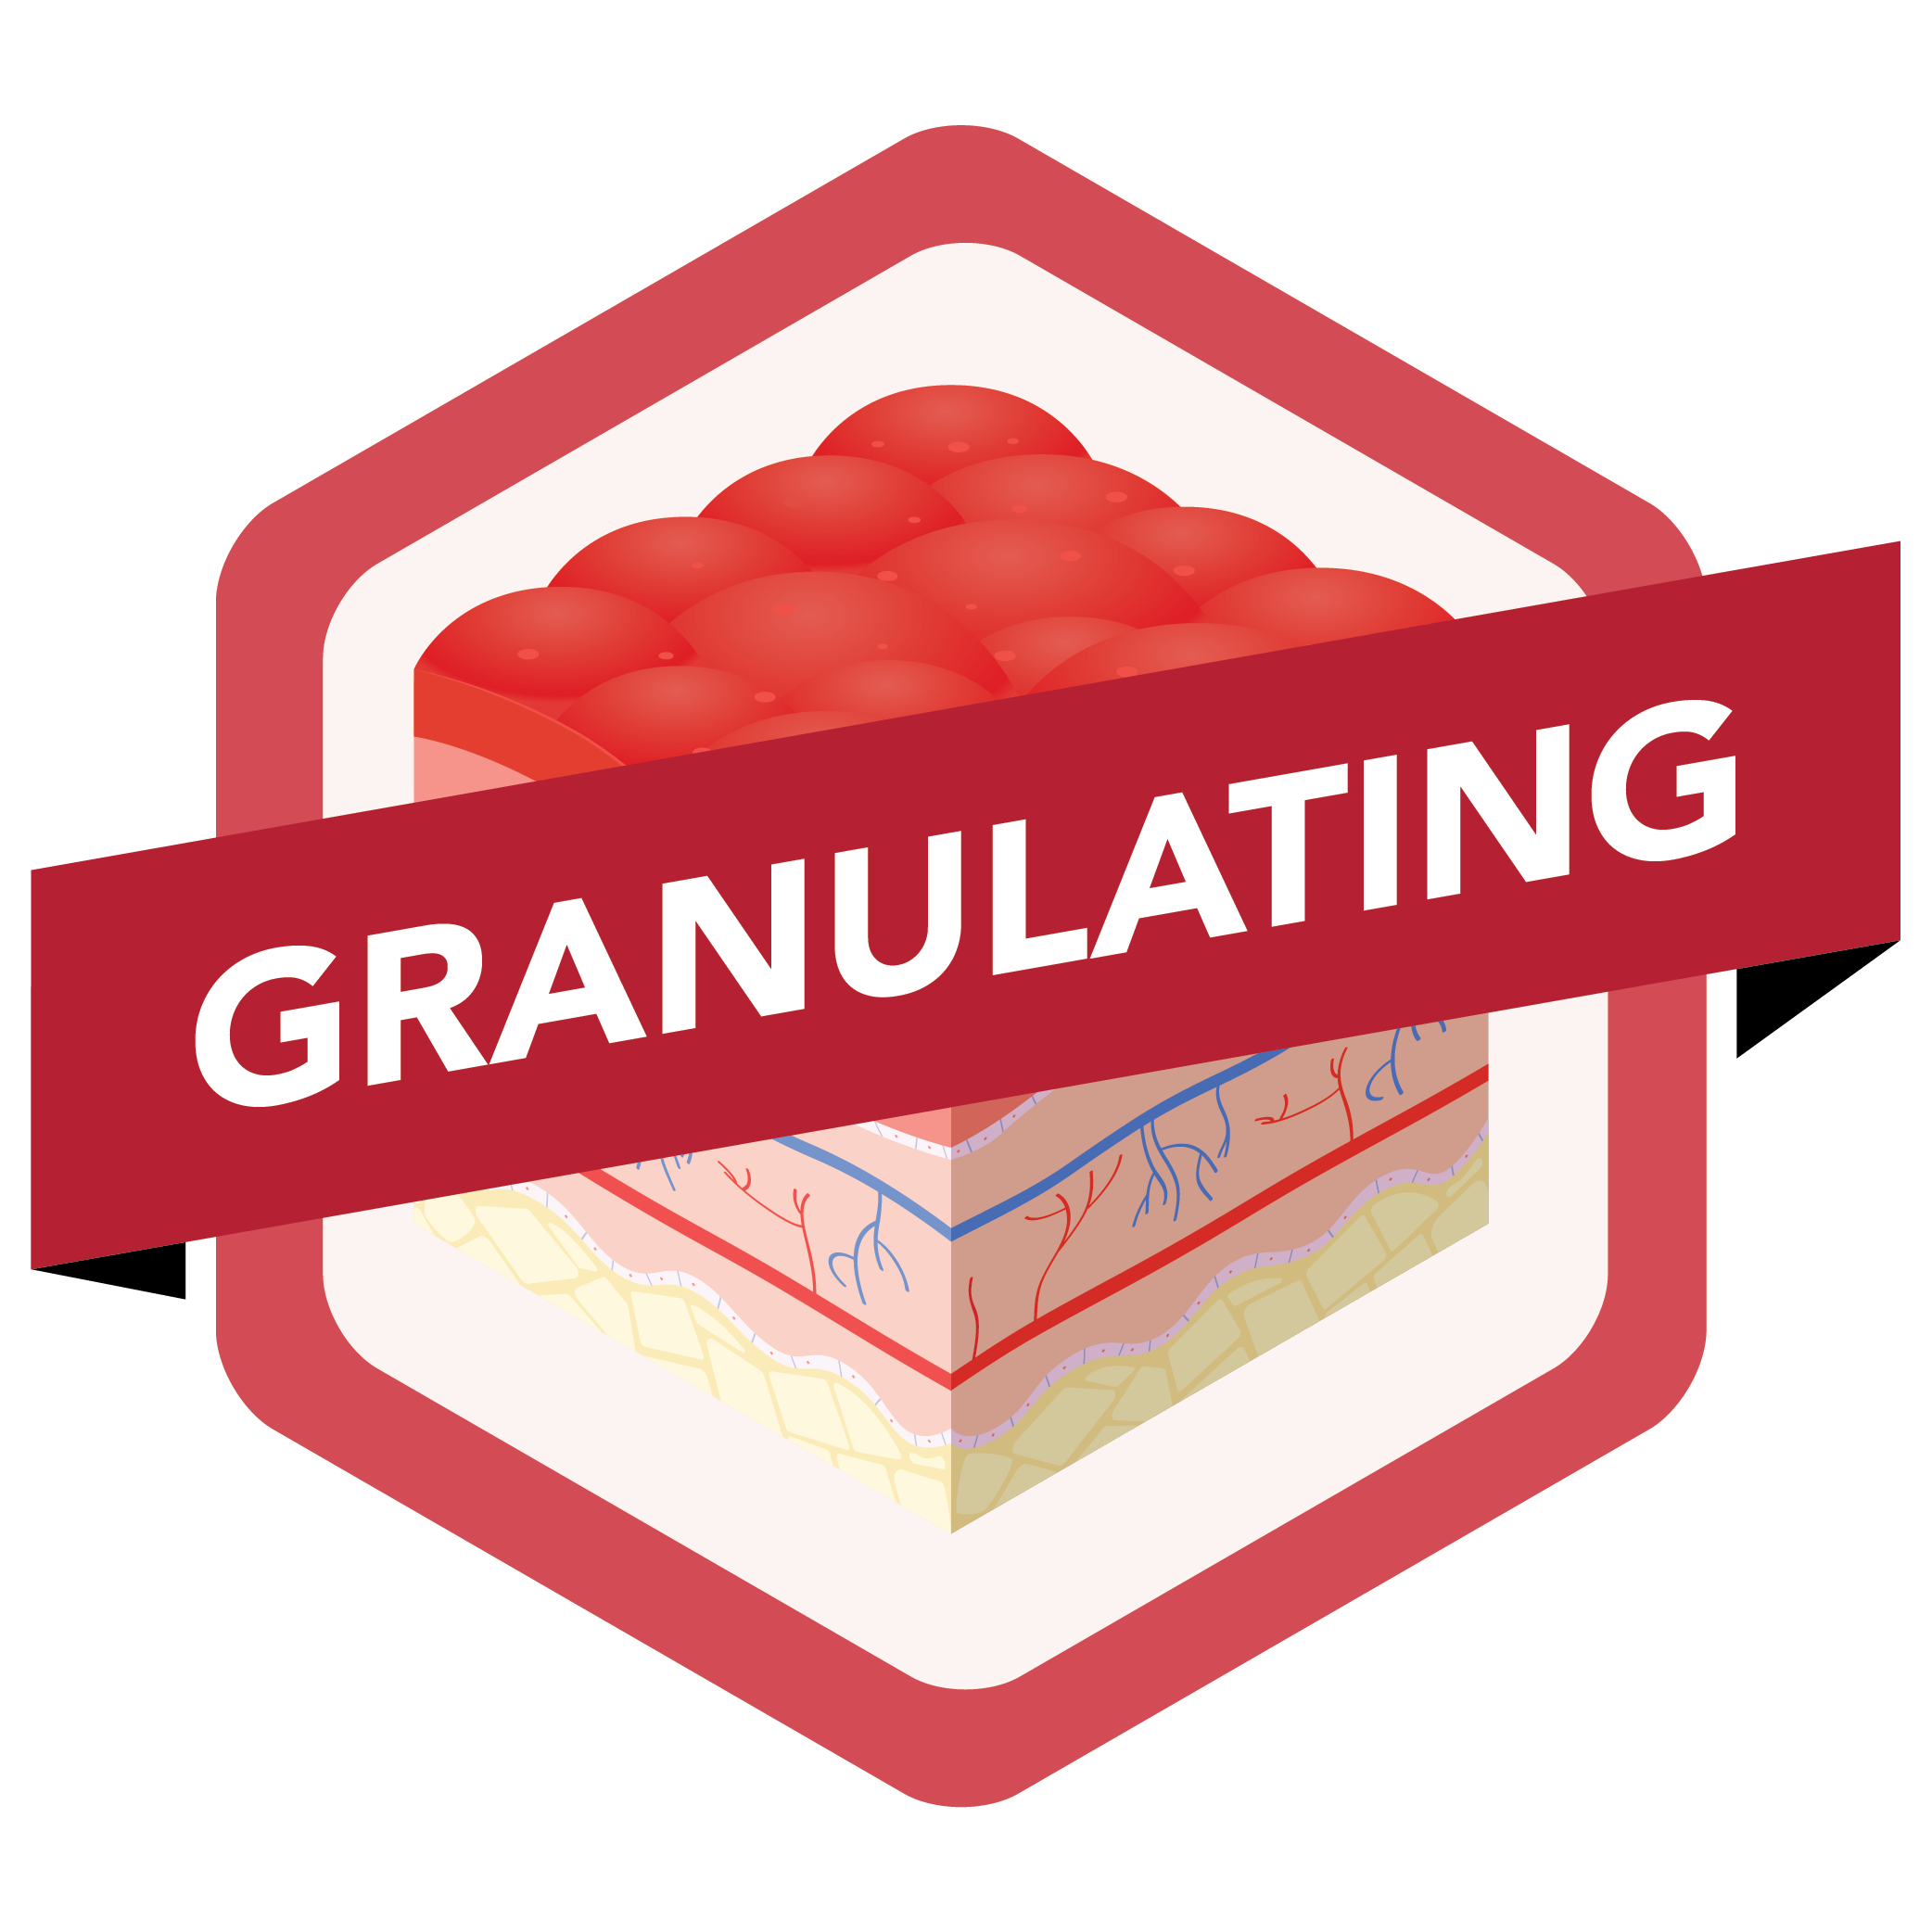 Granulating